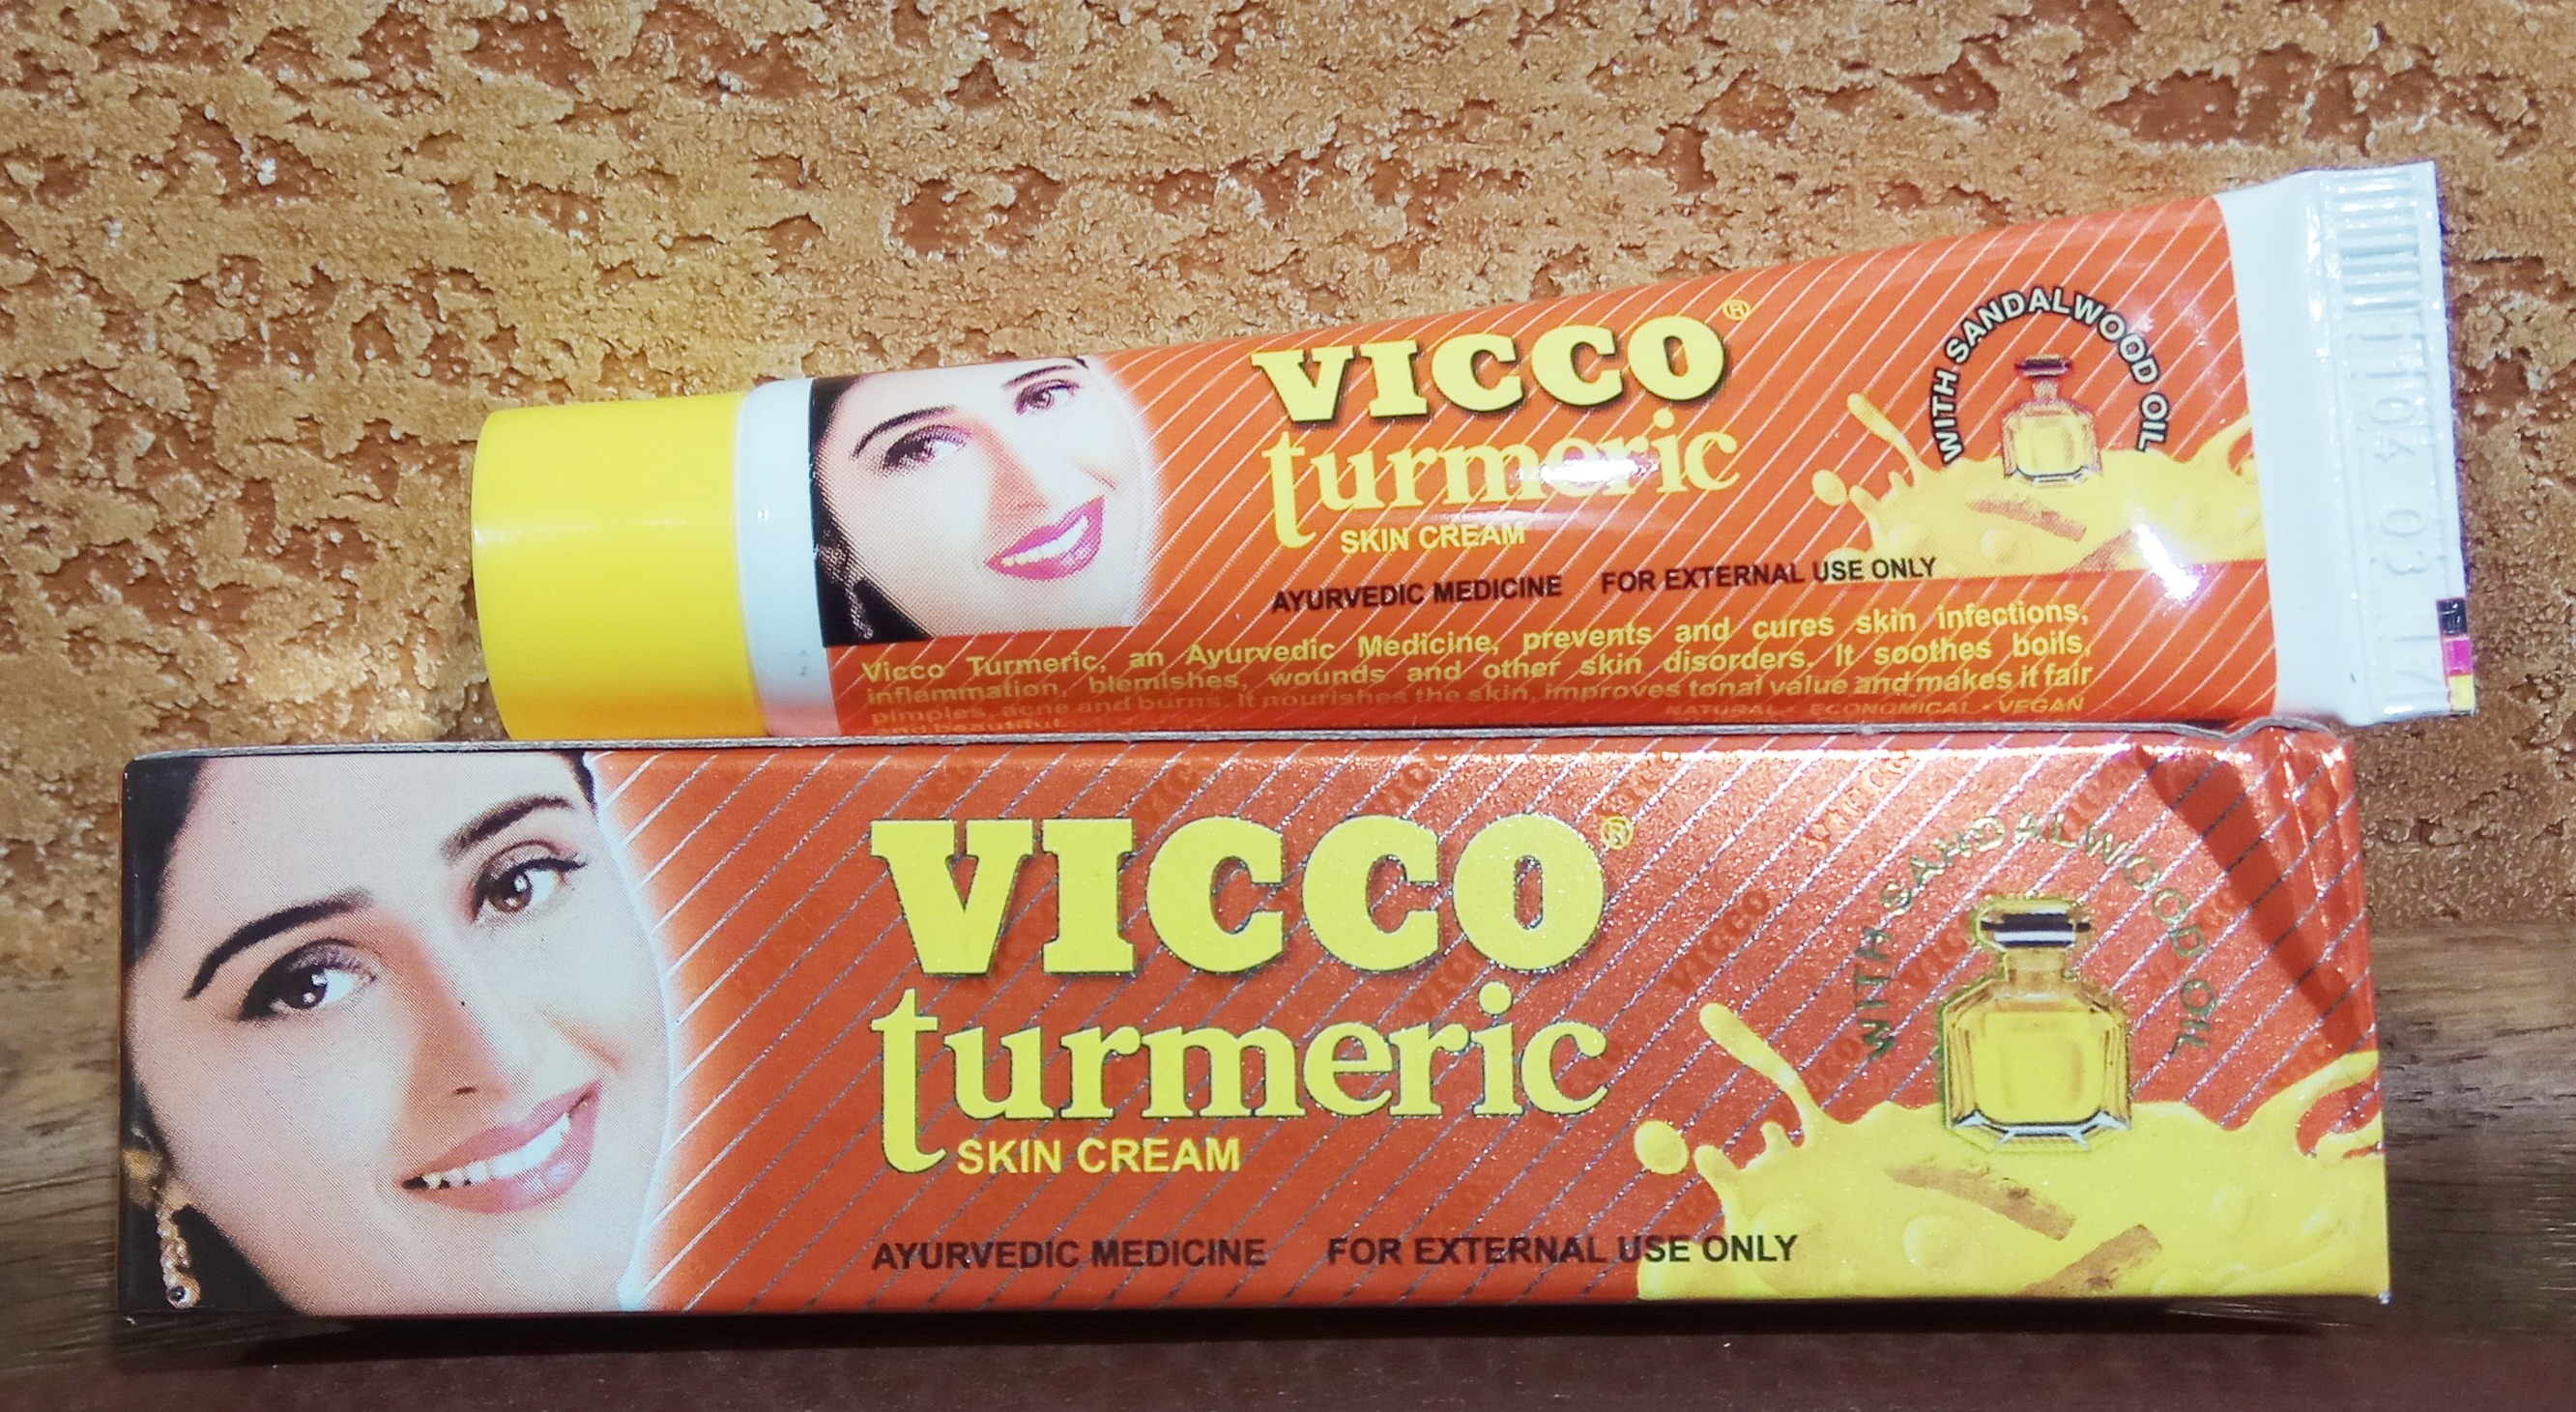 Викко крем турмерик 30 гр Vicco turmeric с куркумой аюрведический осветляет кожу, омолаживает, от пятен, защищает.  Индия